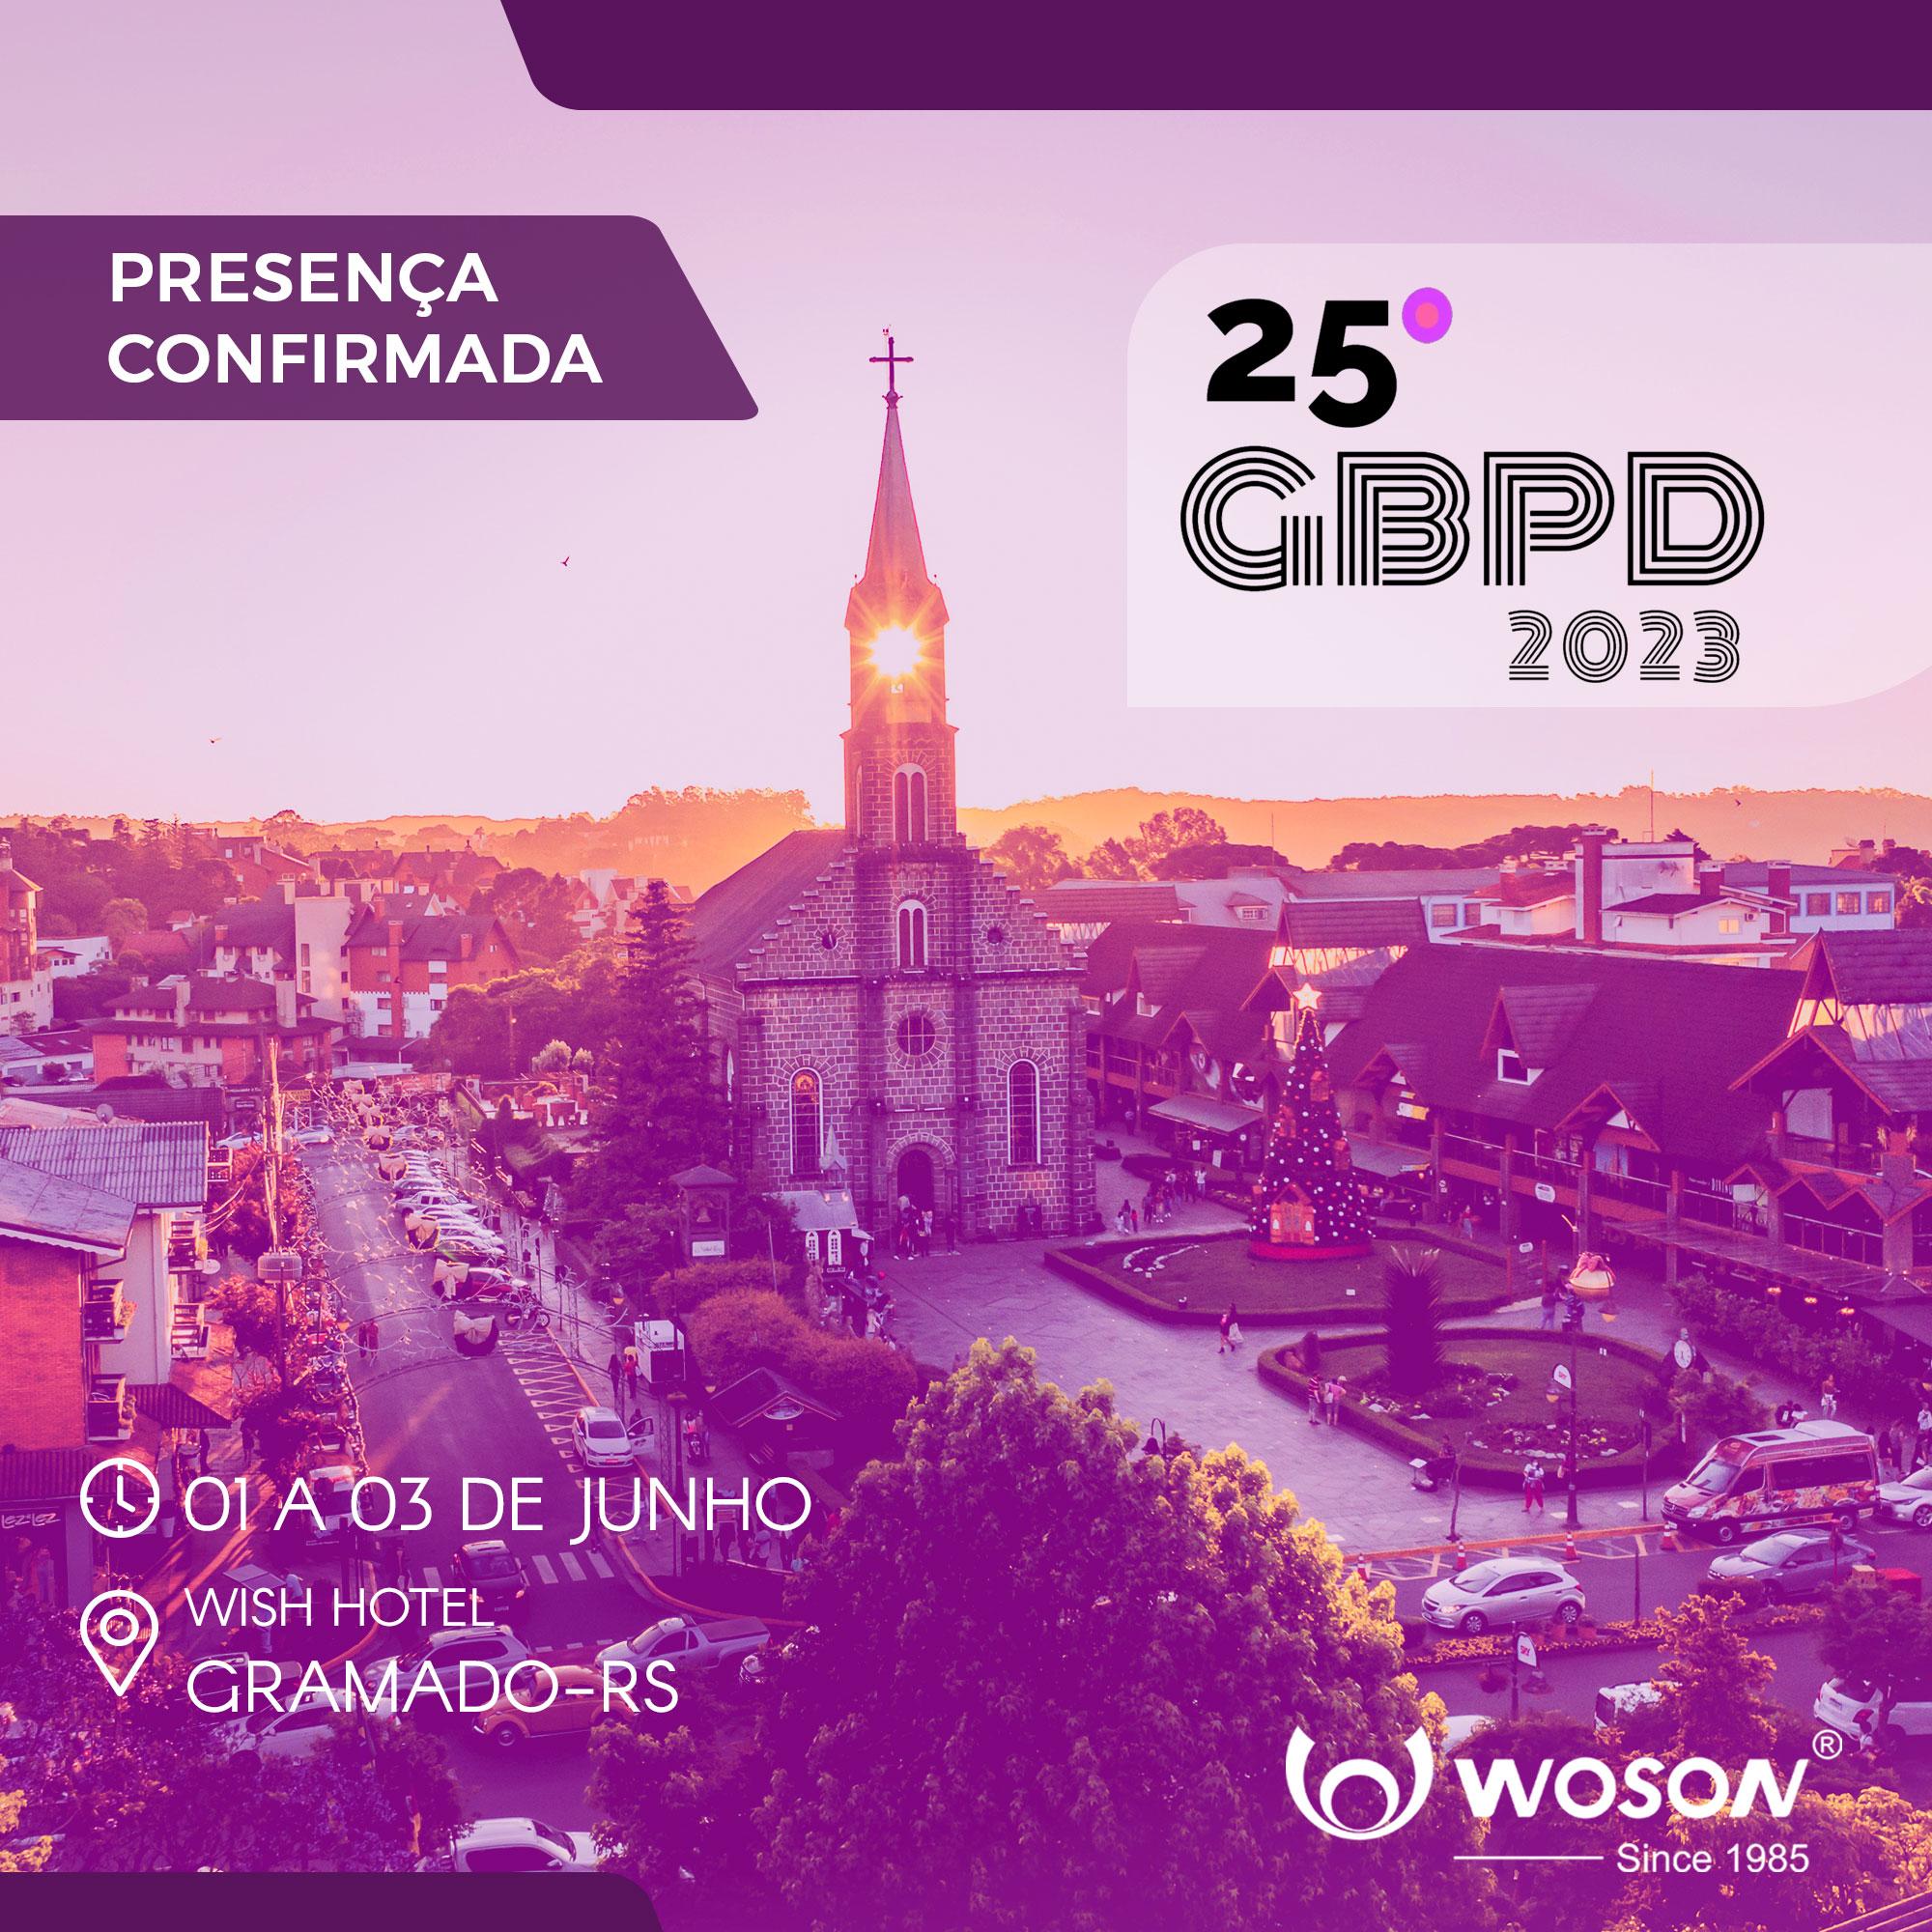 WOSON PRESENTE NO 25º ENCONTRO DO GBPD, EM GRAMADO-RS, DE 01 A 03 DE JUNHO